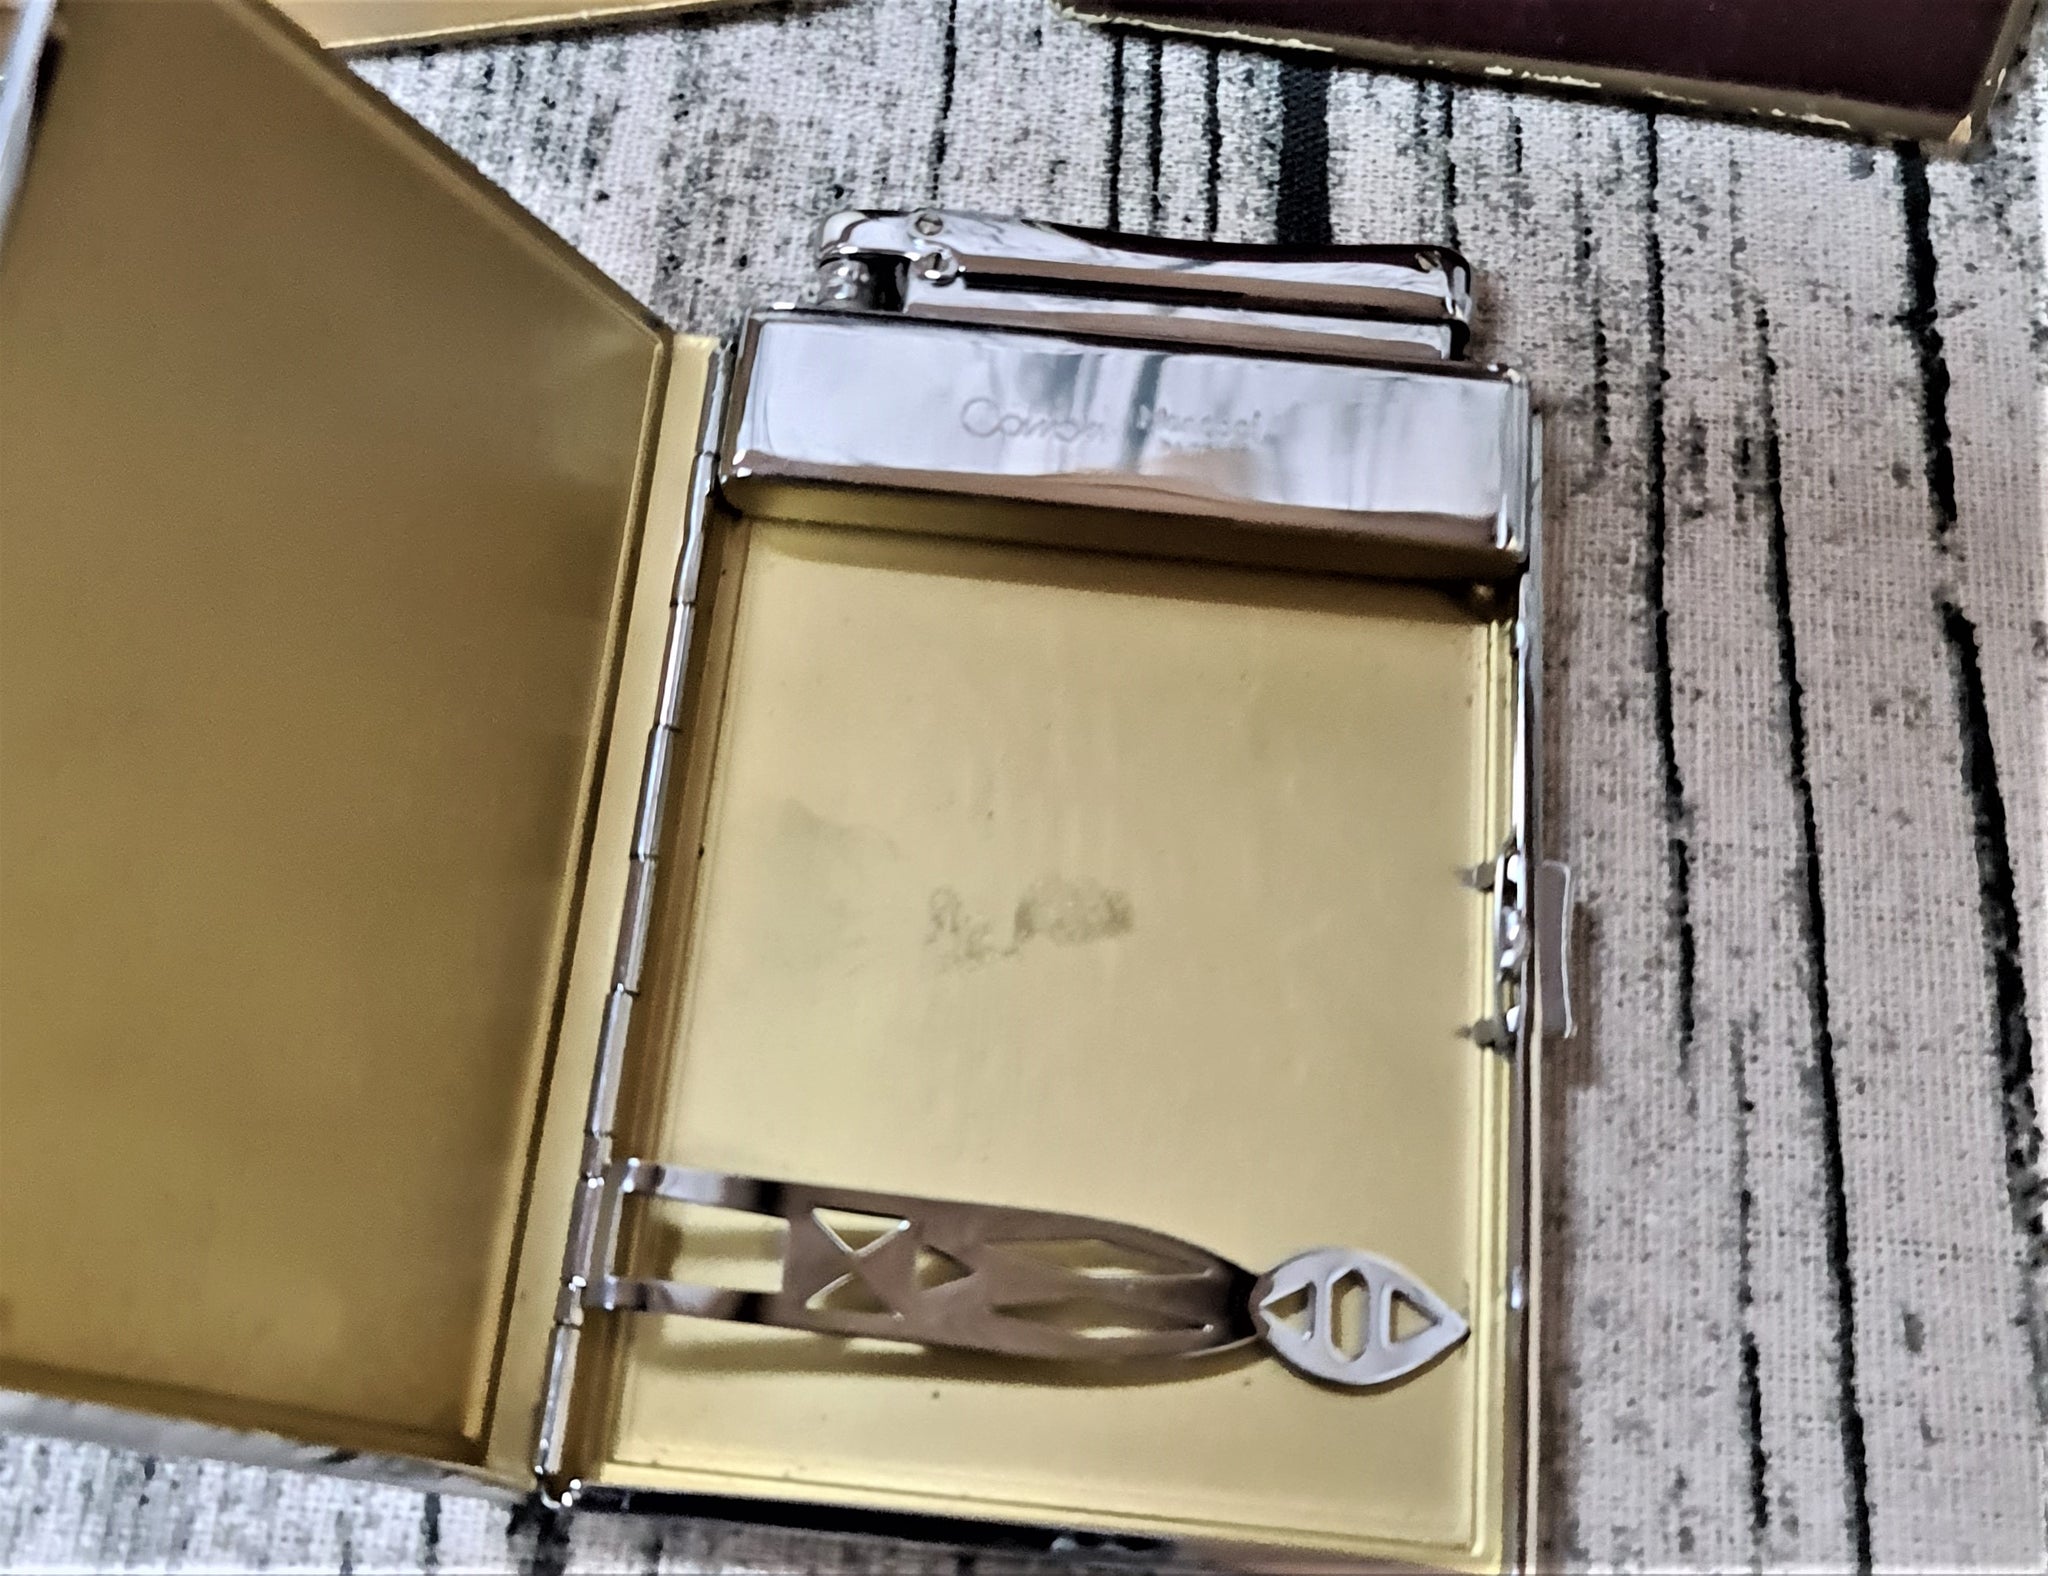 colibri monopol cigarette case and lighter metal 1960s